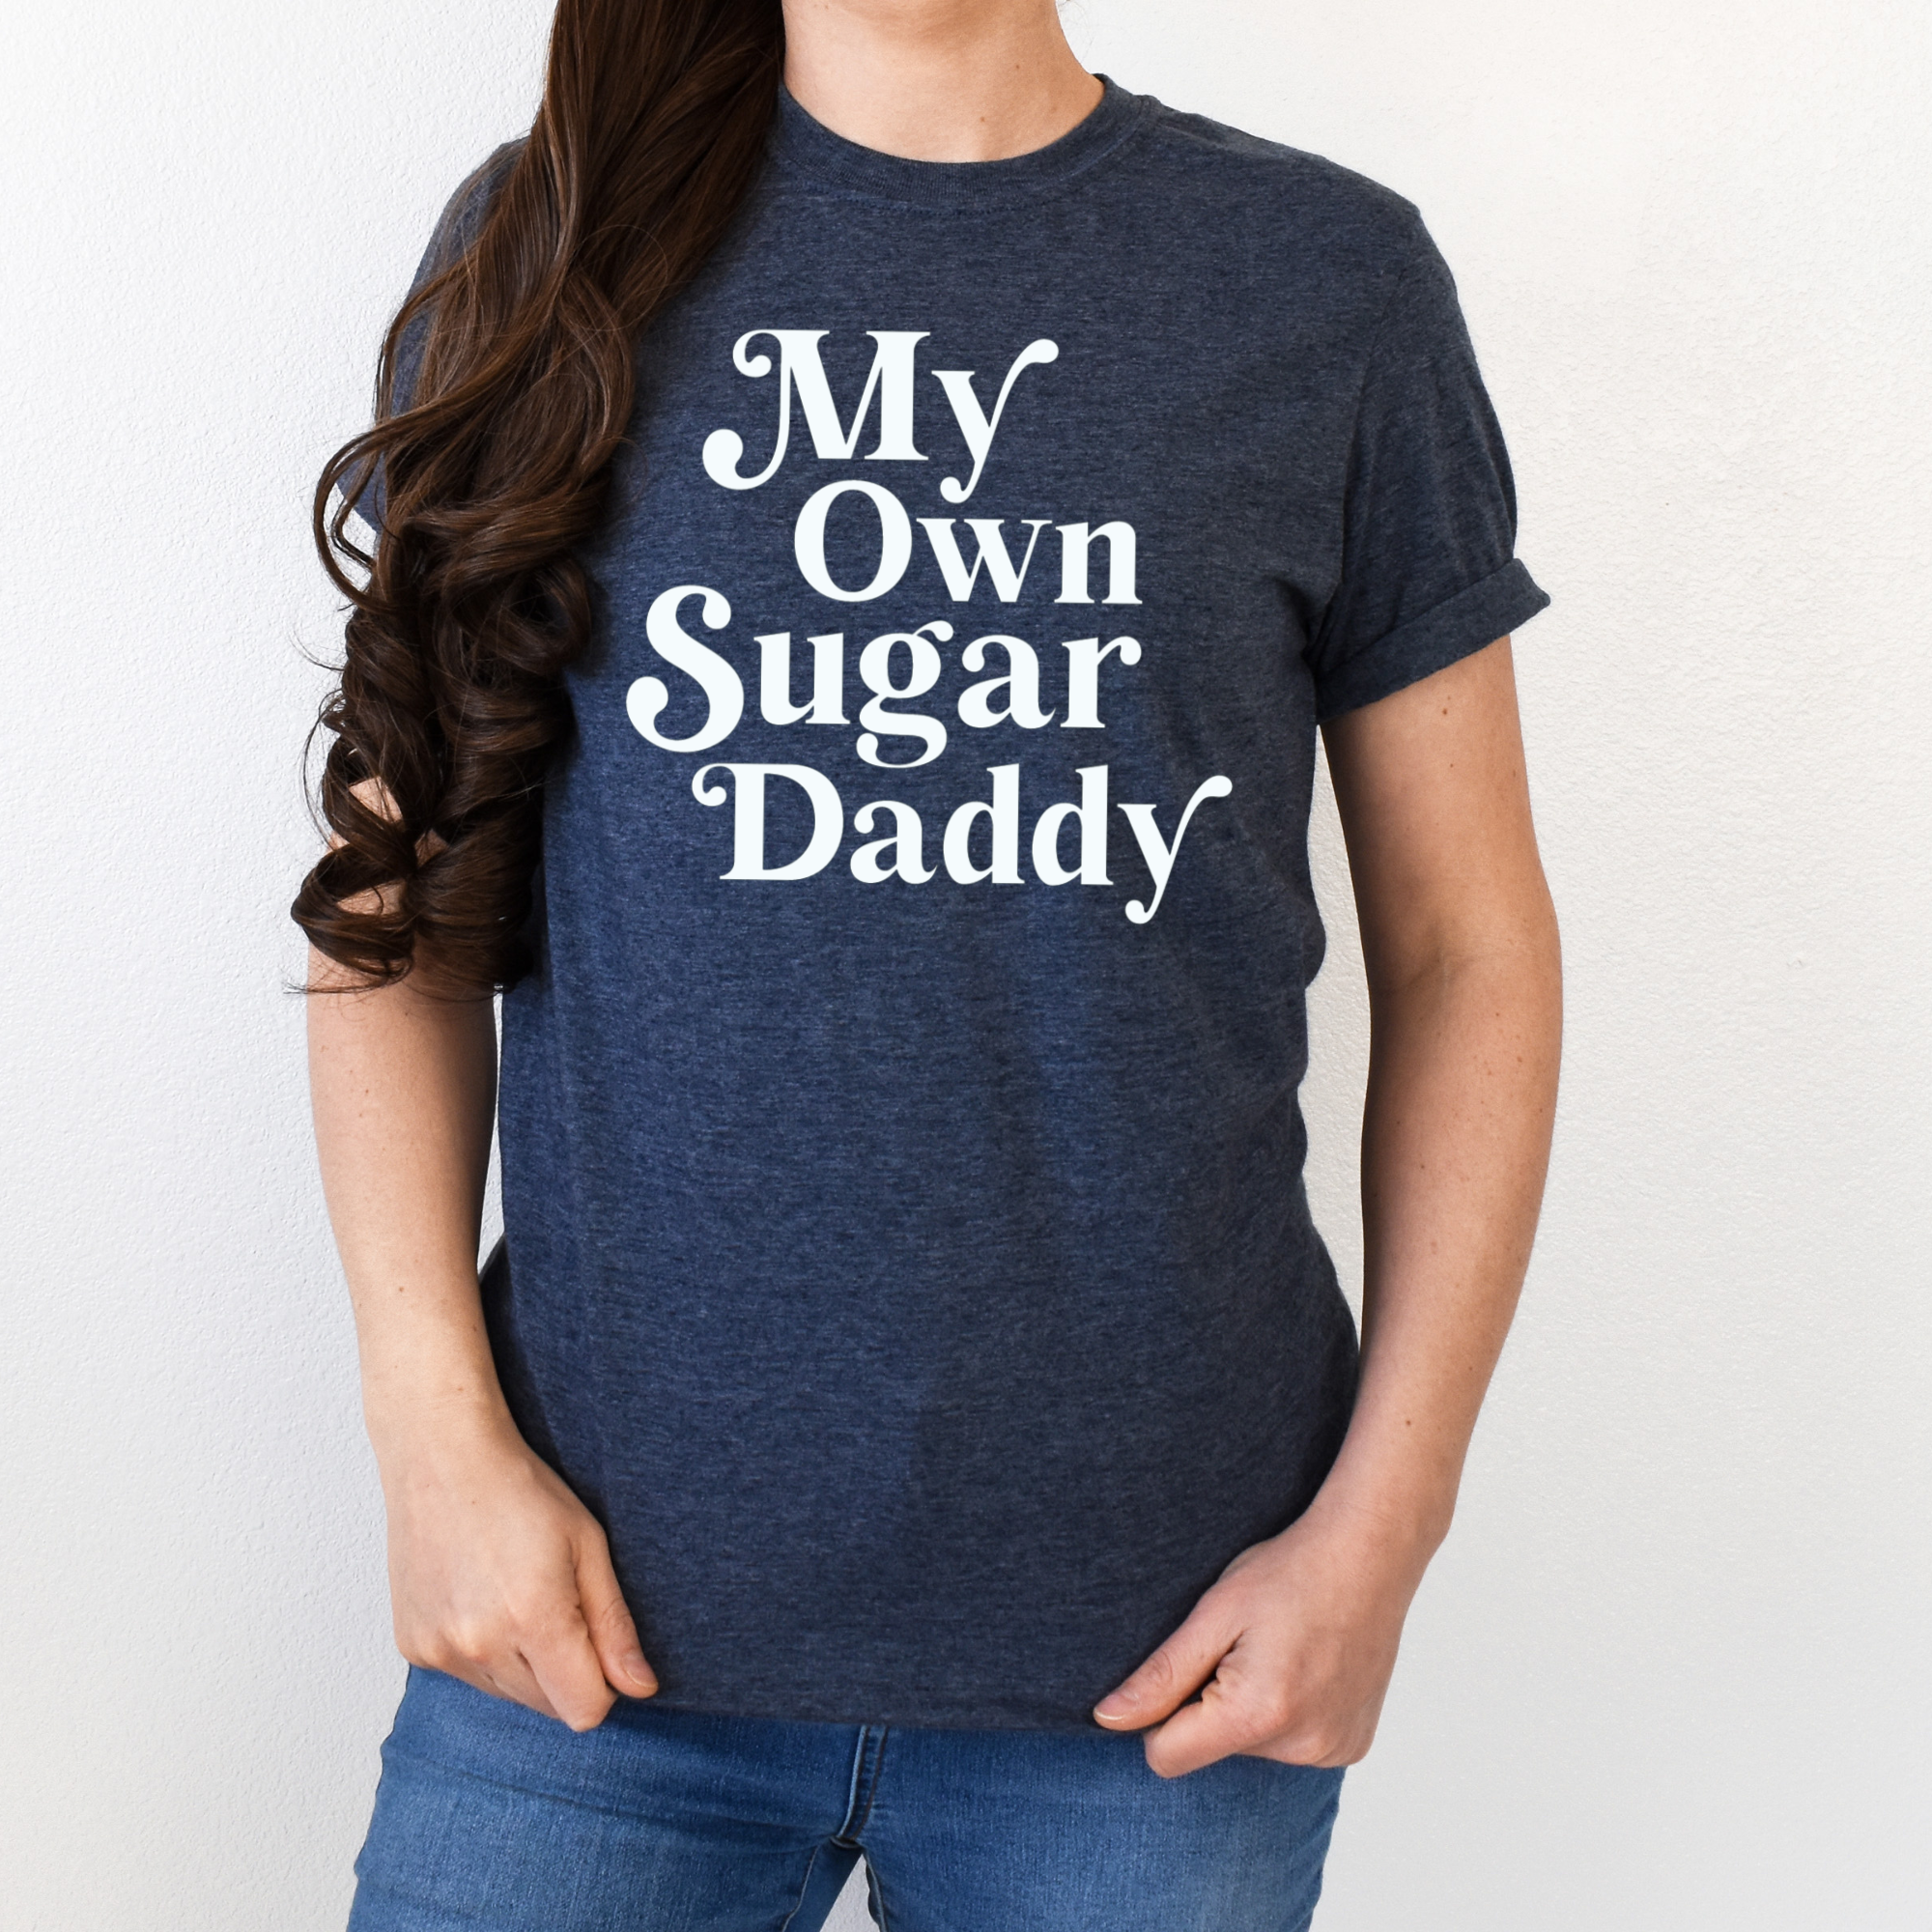 My Own Sugar Daddy Shirt